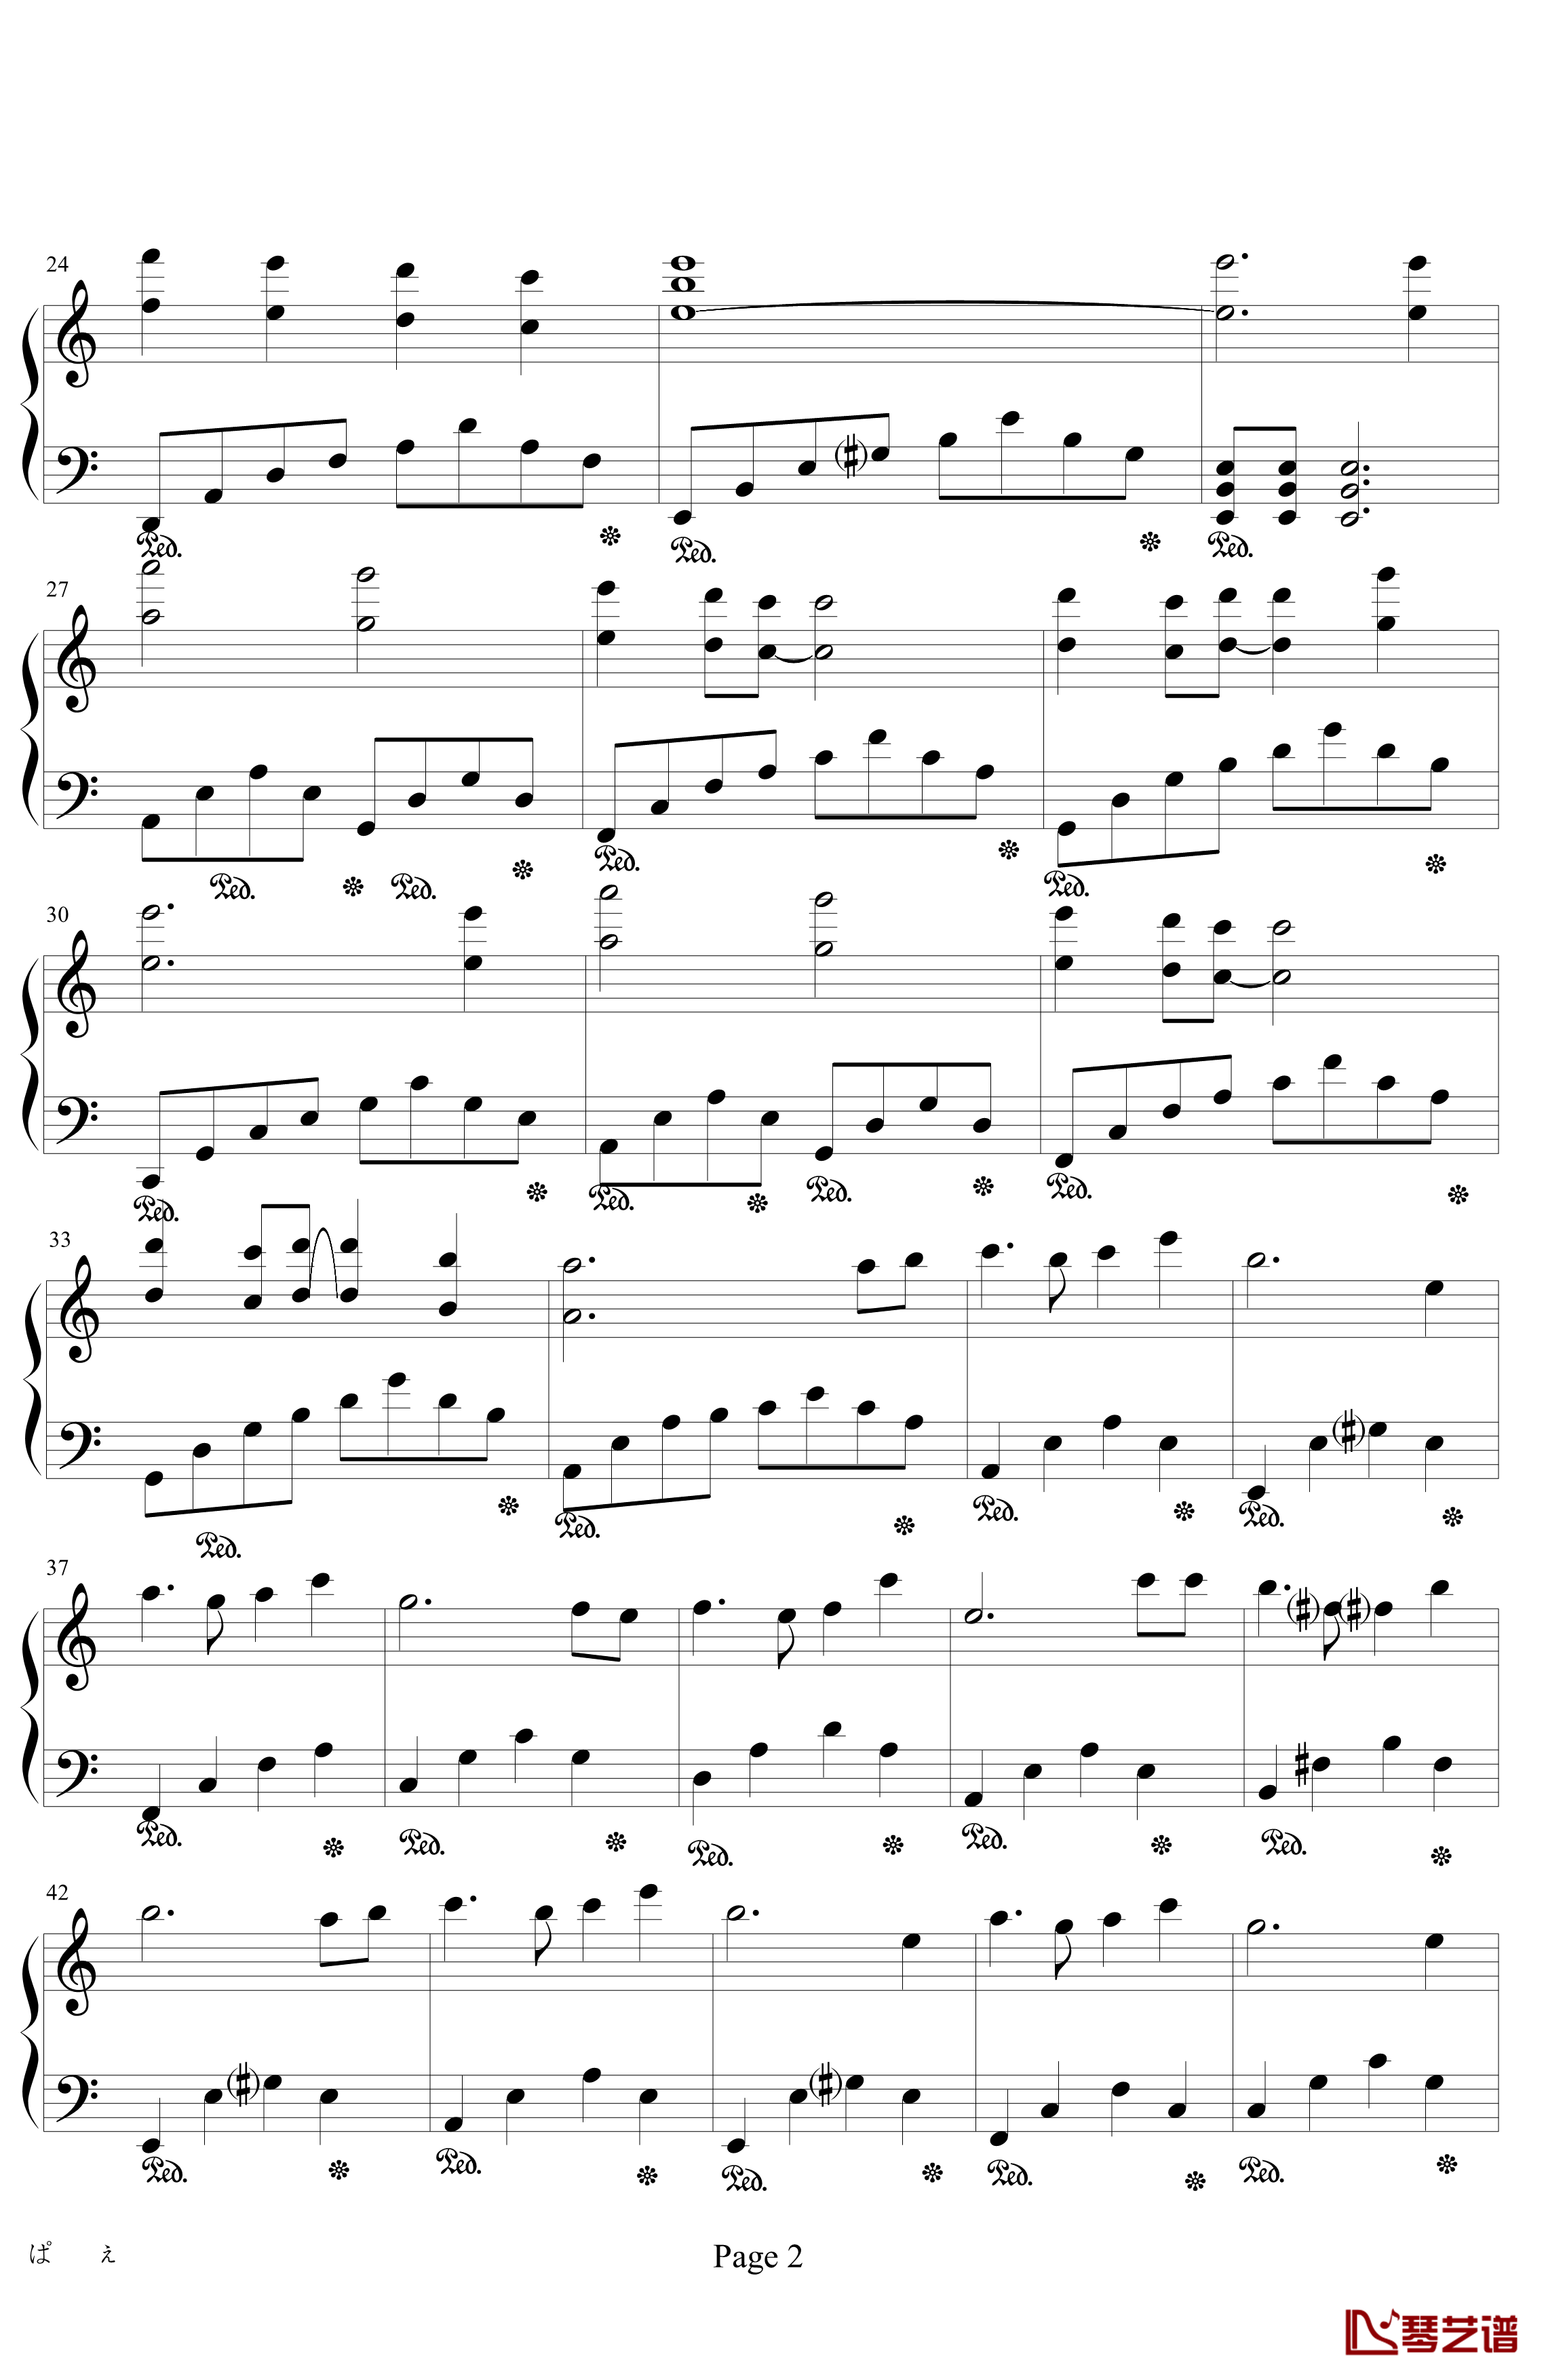 天空之城钢琴谱-最佳简易演奏学习版-戴尚辉2